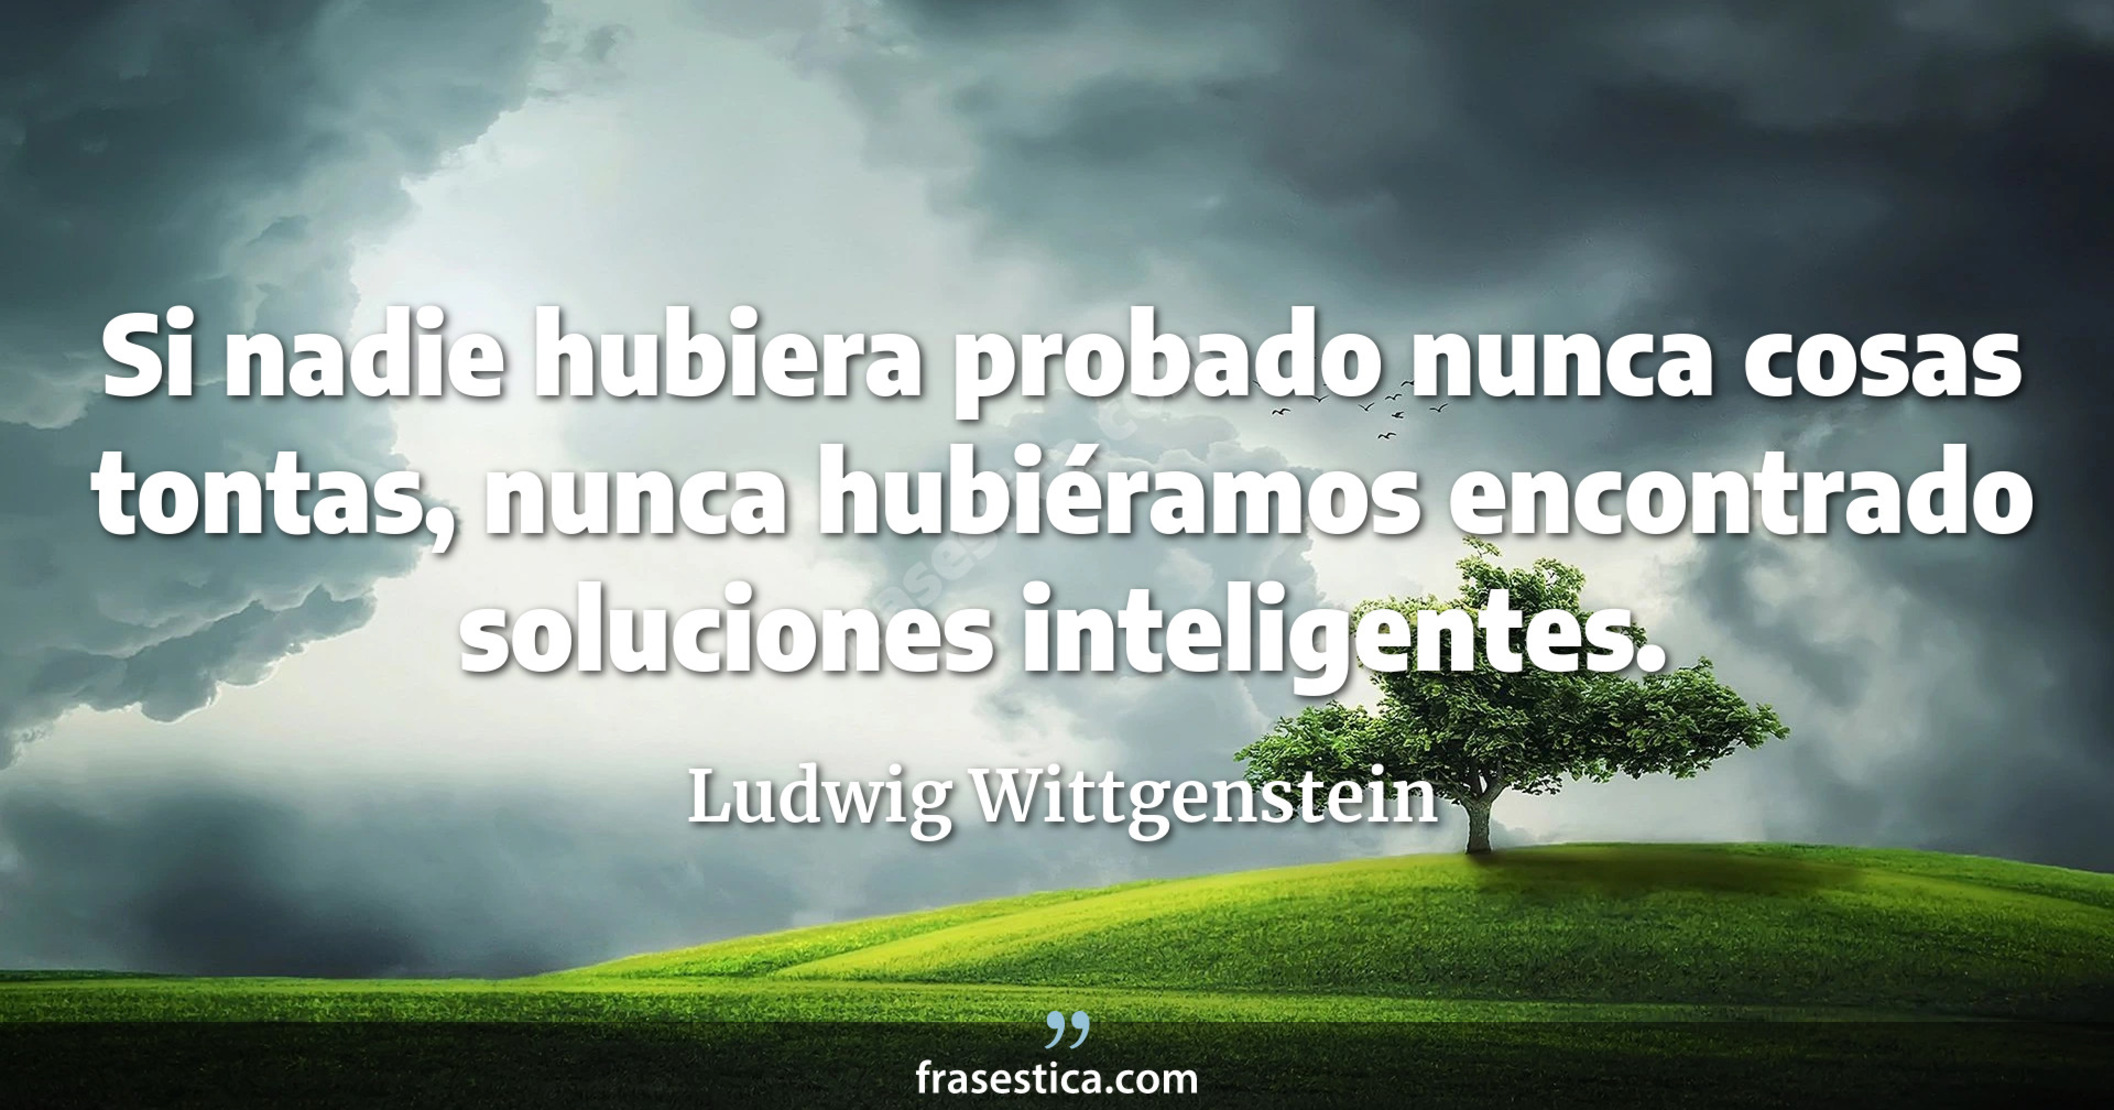 Si nadie hubiera probado nunca cosas tontas, nunca hubiéramos encontrado soluciones inteligentes. - Ludwig Wittgenstein